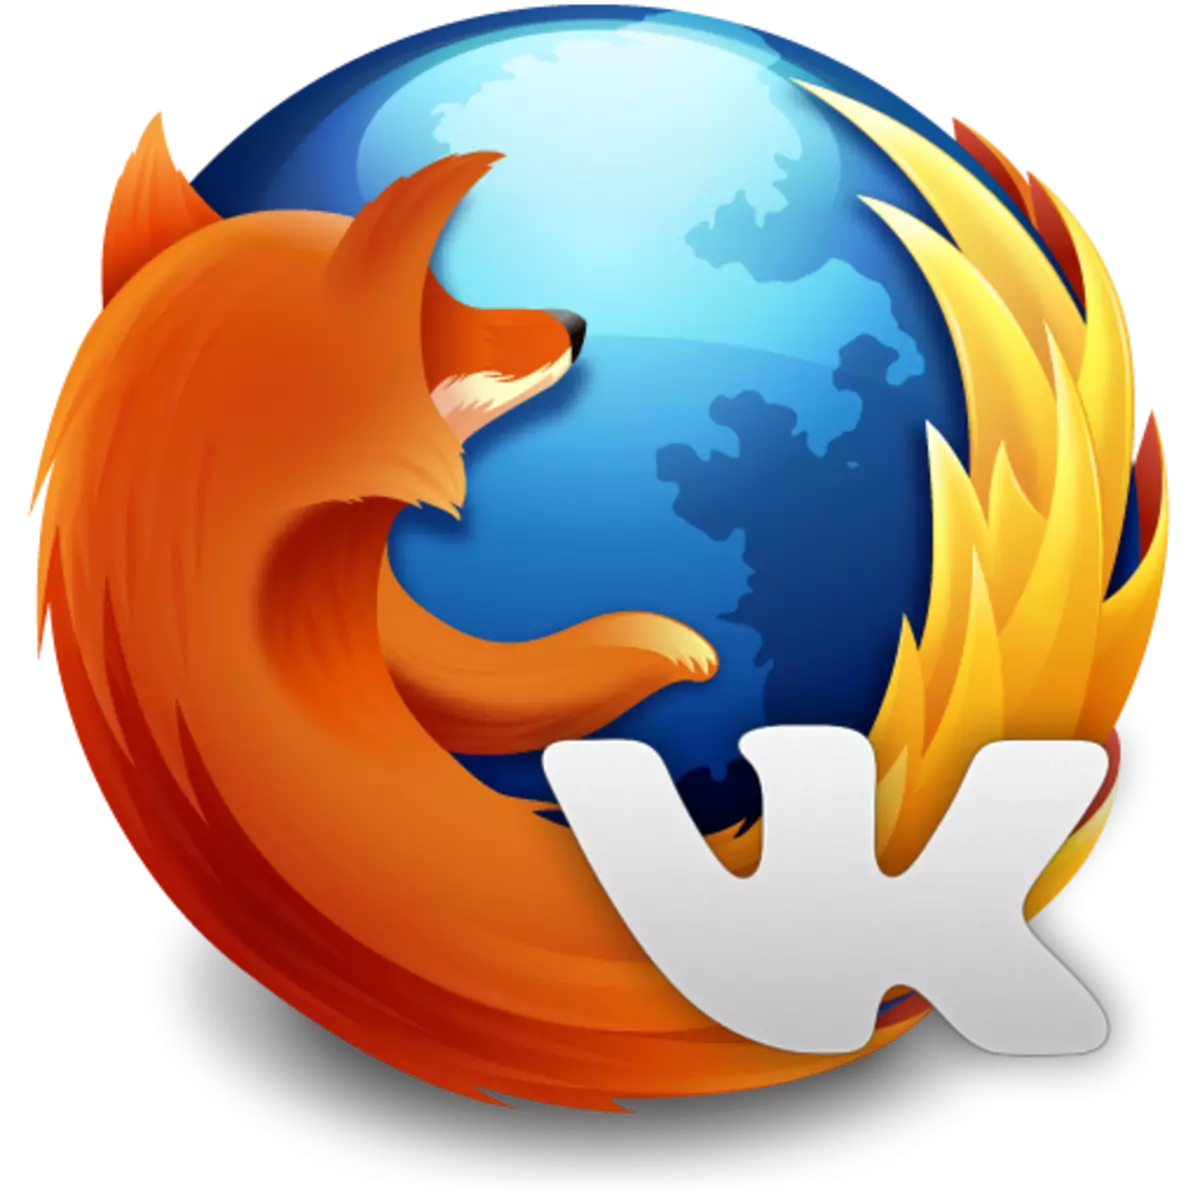 Firefox Plugins fir Musek vko eroflueden